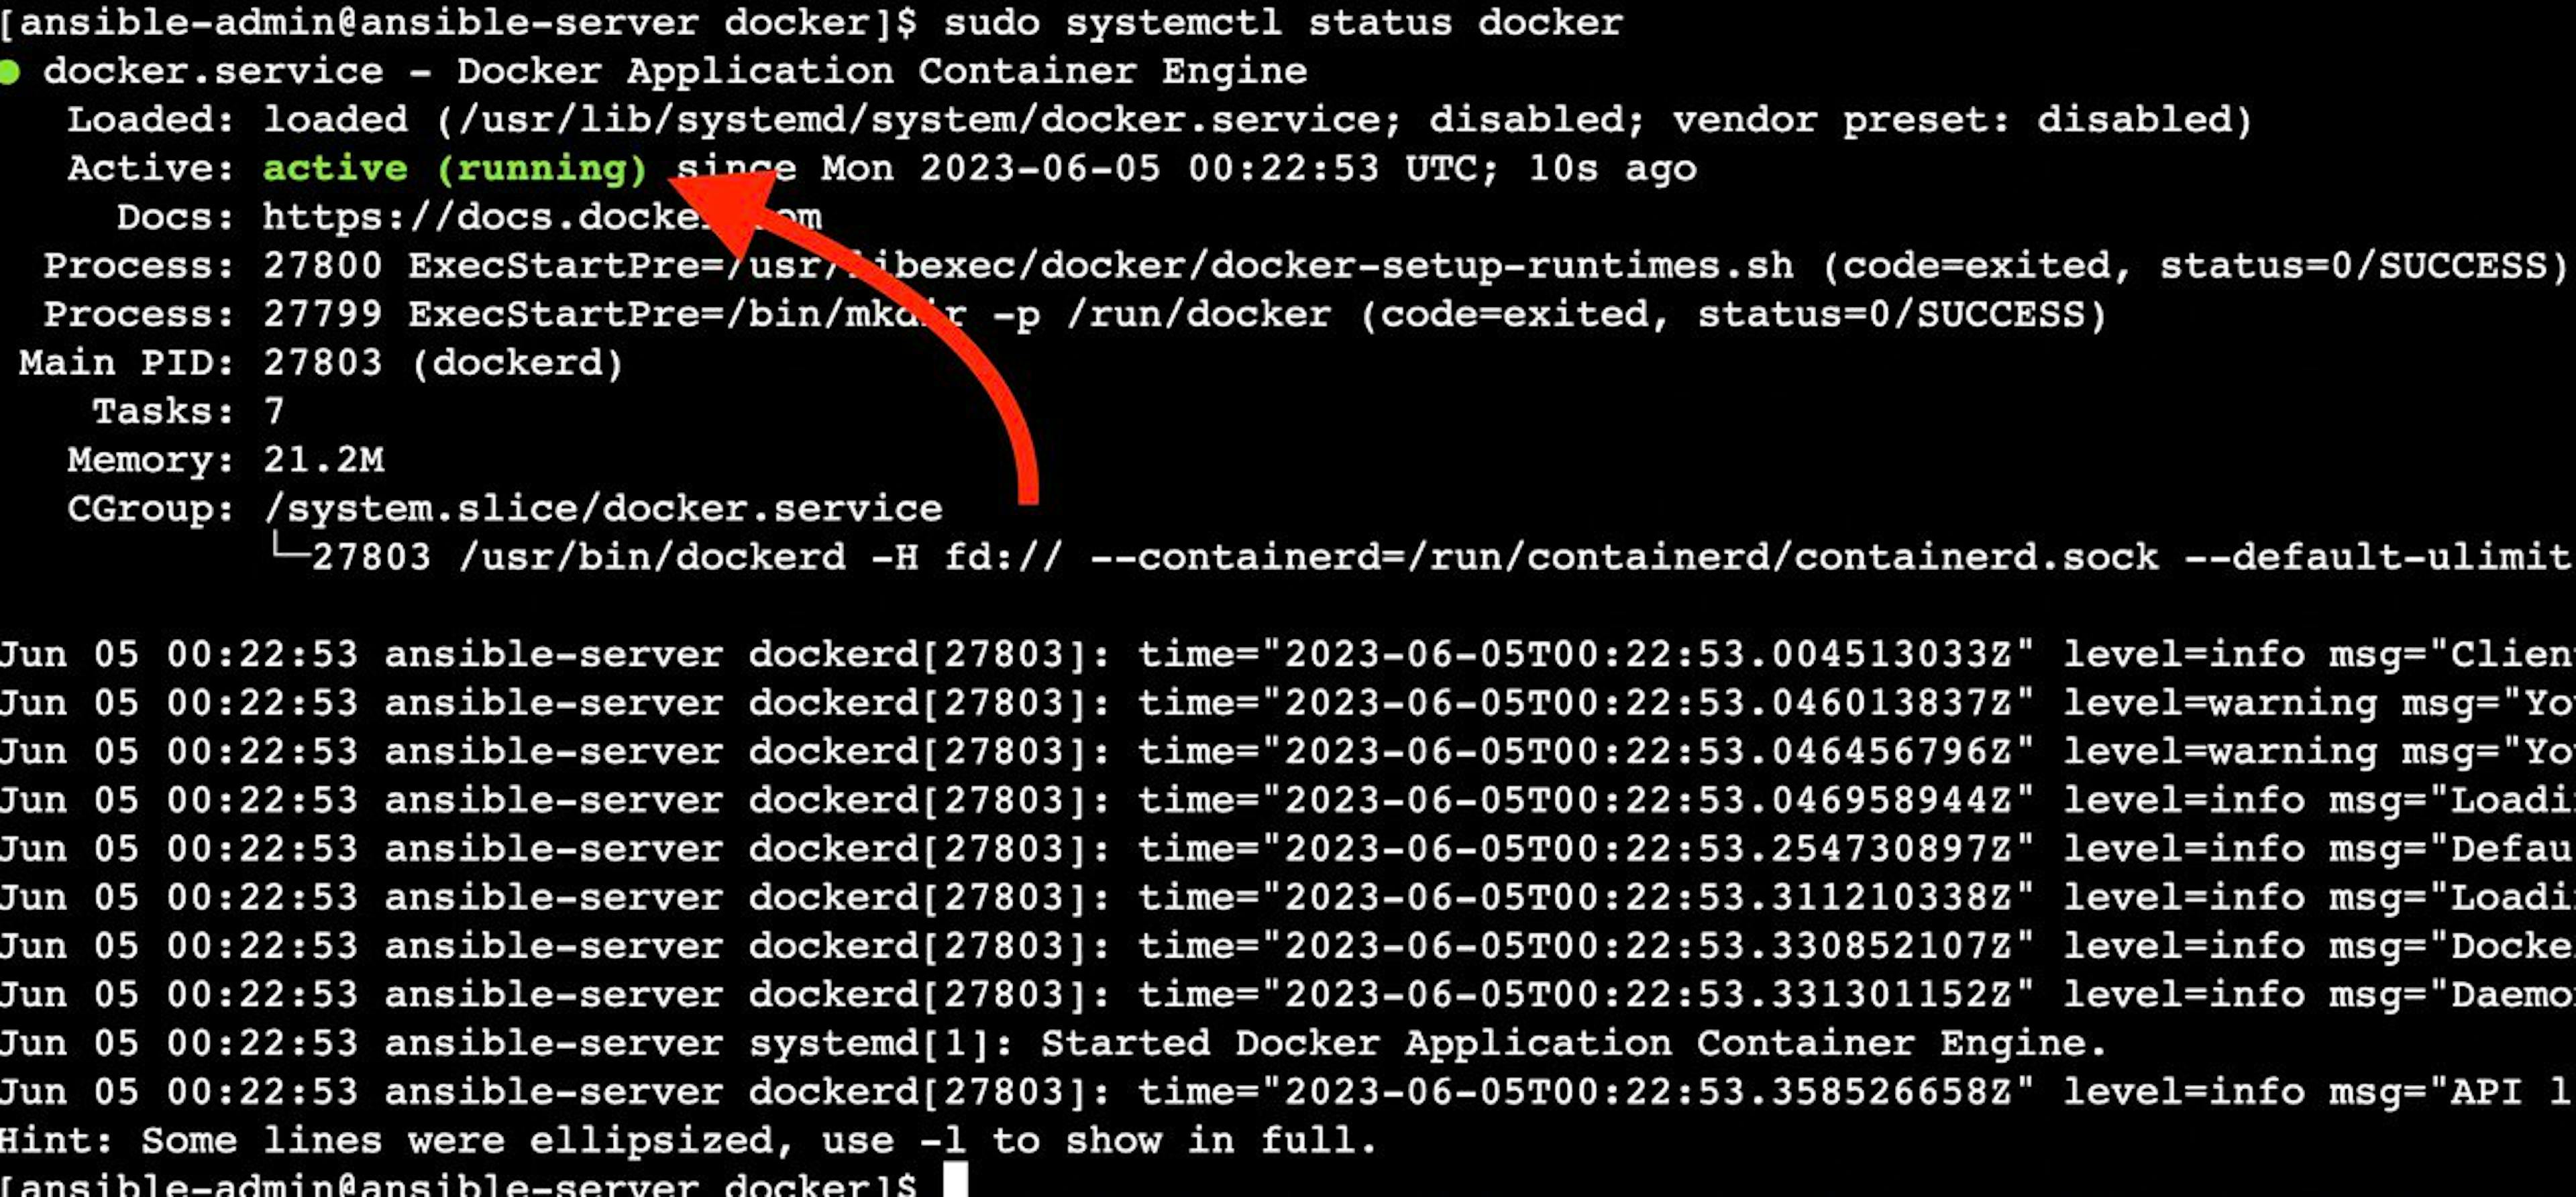 A captura de tela da instância do Ansible EC2 com o status do docker ativo